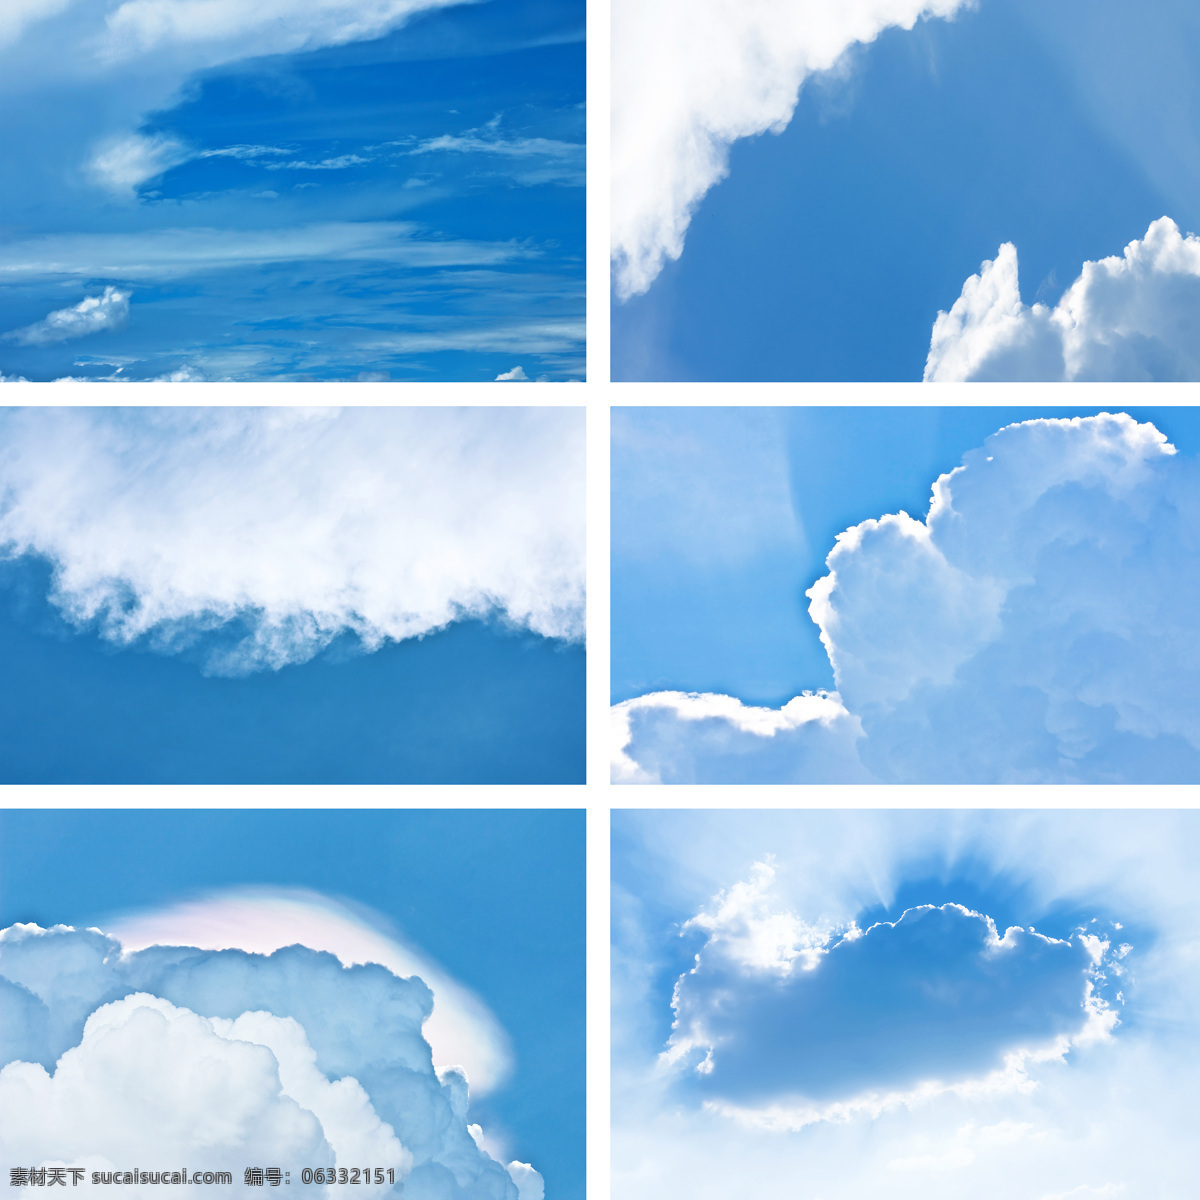 蓝天 白云 图片集 美景 自然风景 天空 蓝色 壮观 云层 阳光 天空云彩 蓝天白云 风景图片